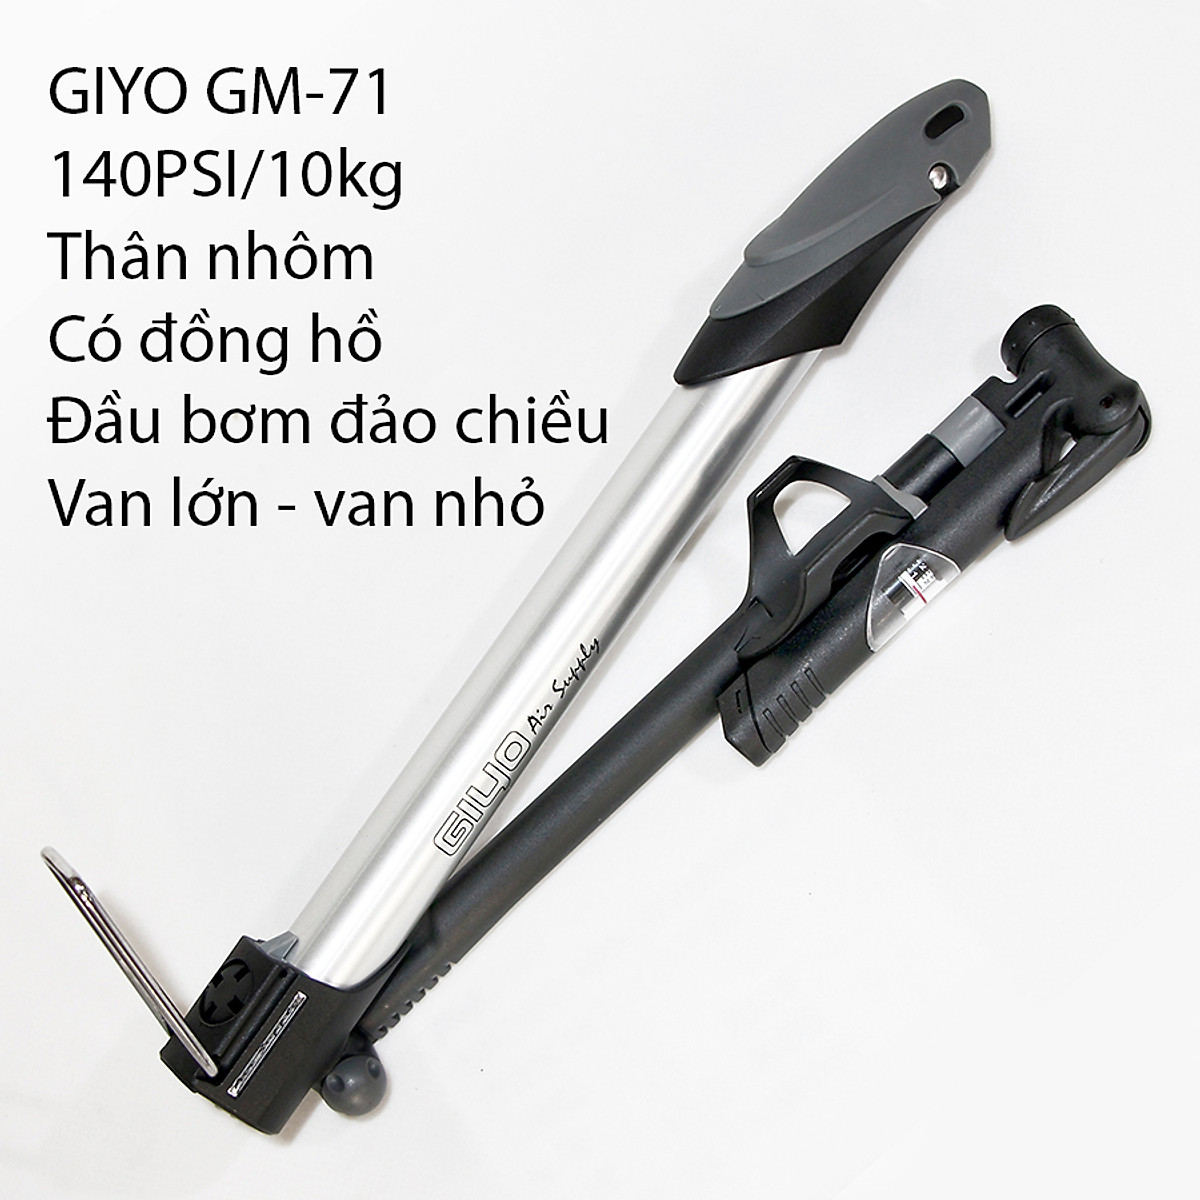 Bơm xe đạp mini GIYO-GM71, thân nhôm có đồng hồ, áp suất 120psi/9kg